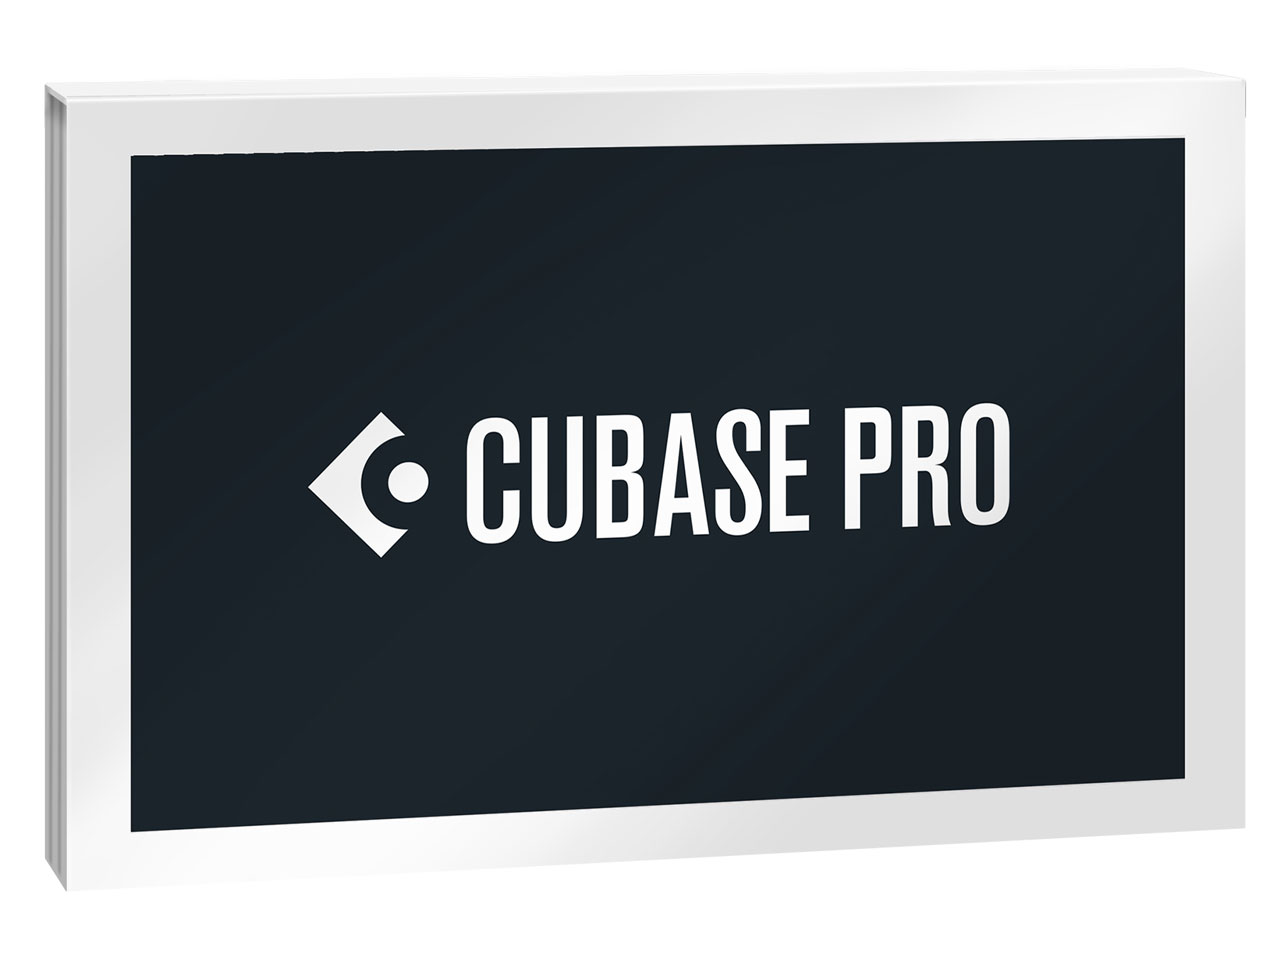 価格.com - Cubase Pro 通常版 の製品画像